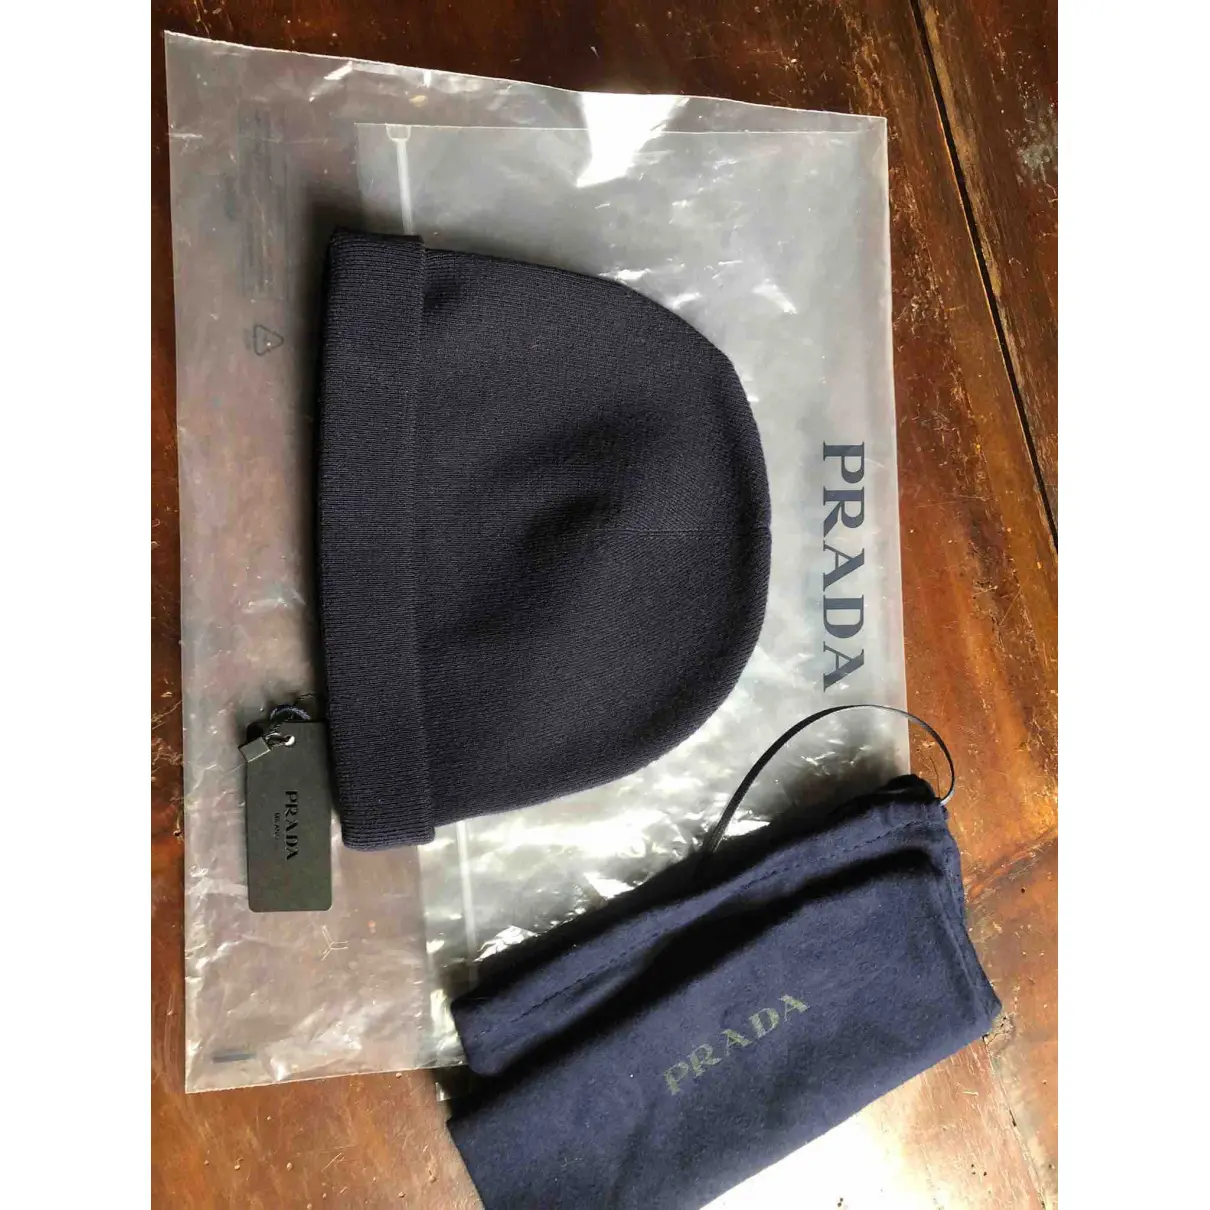 Buy Prada Wool hat online